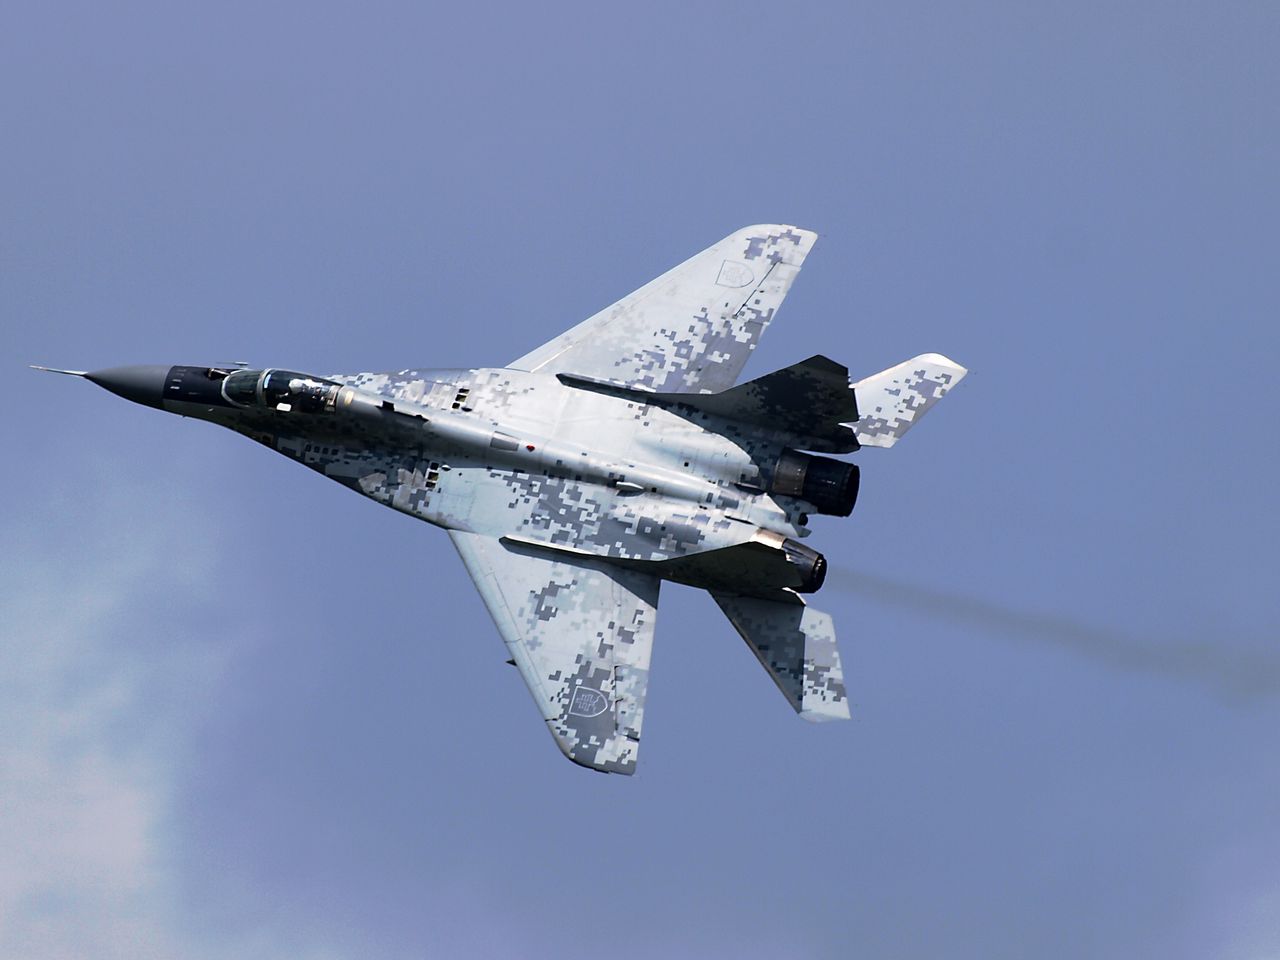 Samolot MiG-29 lotnictwa Słowacji - zdjęcie ilustracyjne